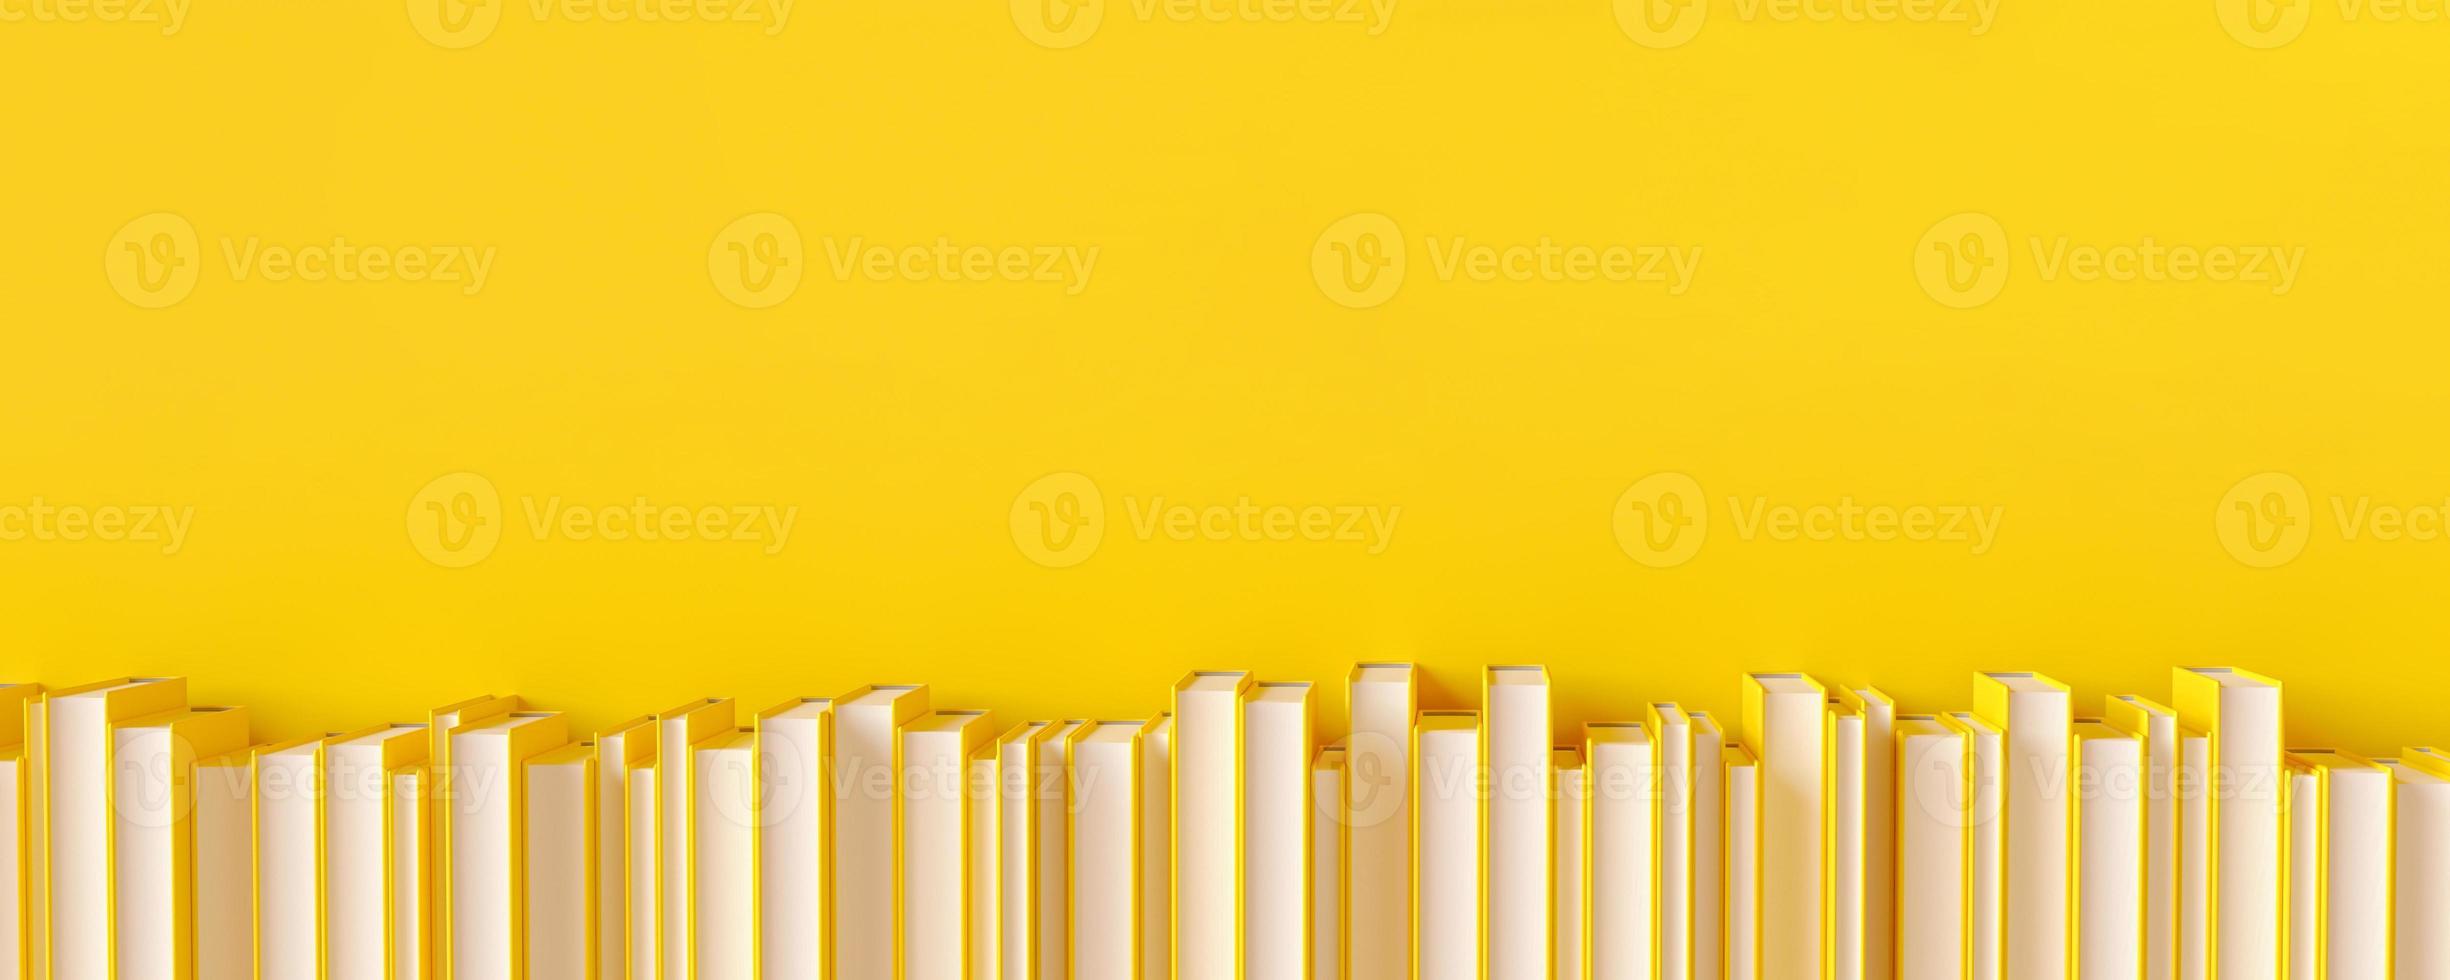 eine Reihe gelber Bücher auf gelbem Hintergrund. 3D-Darstellung. foto